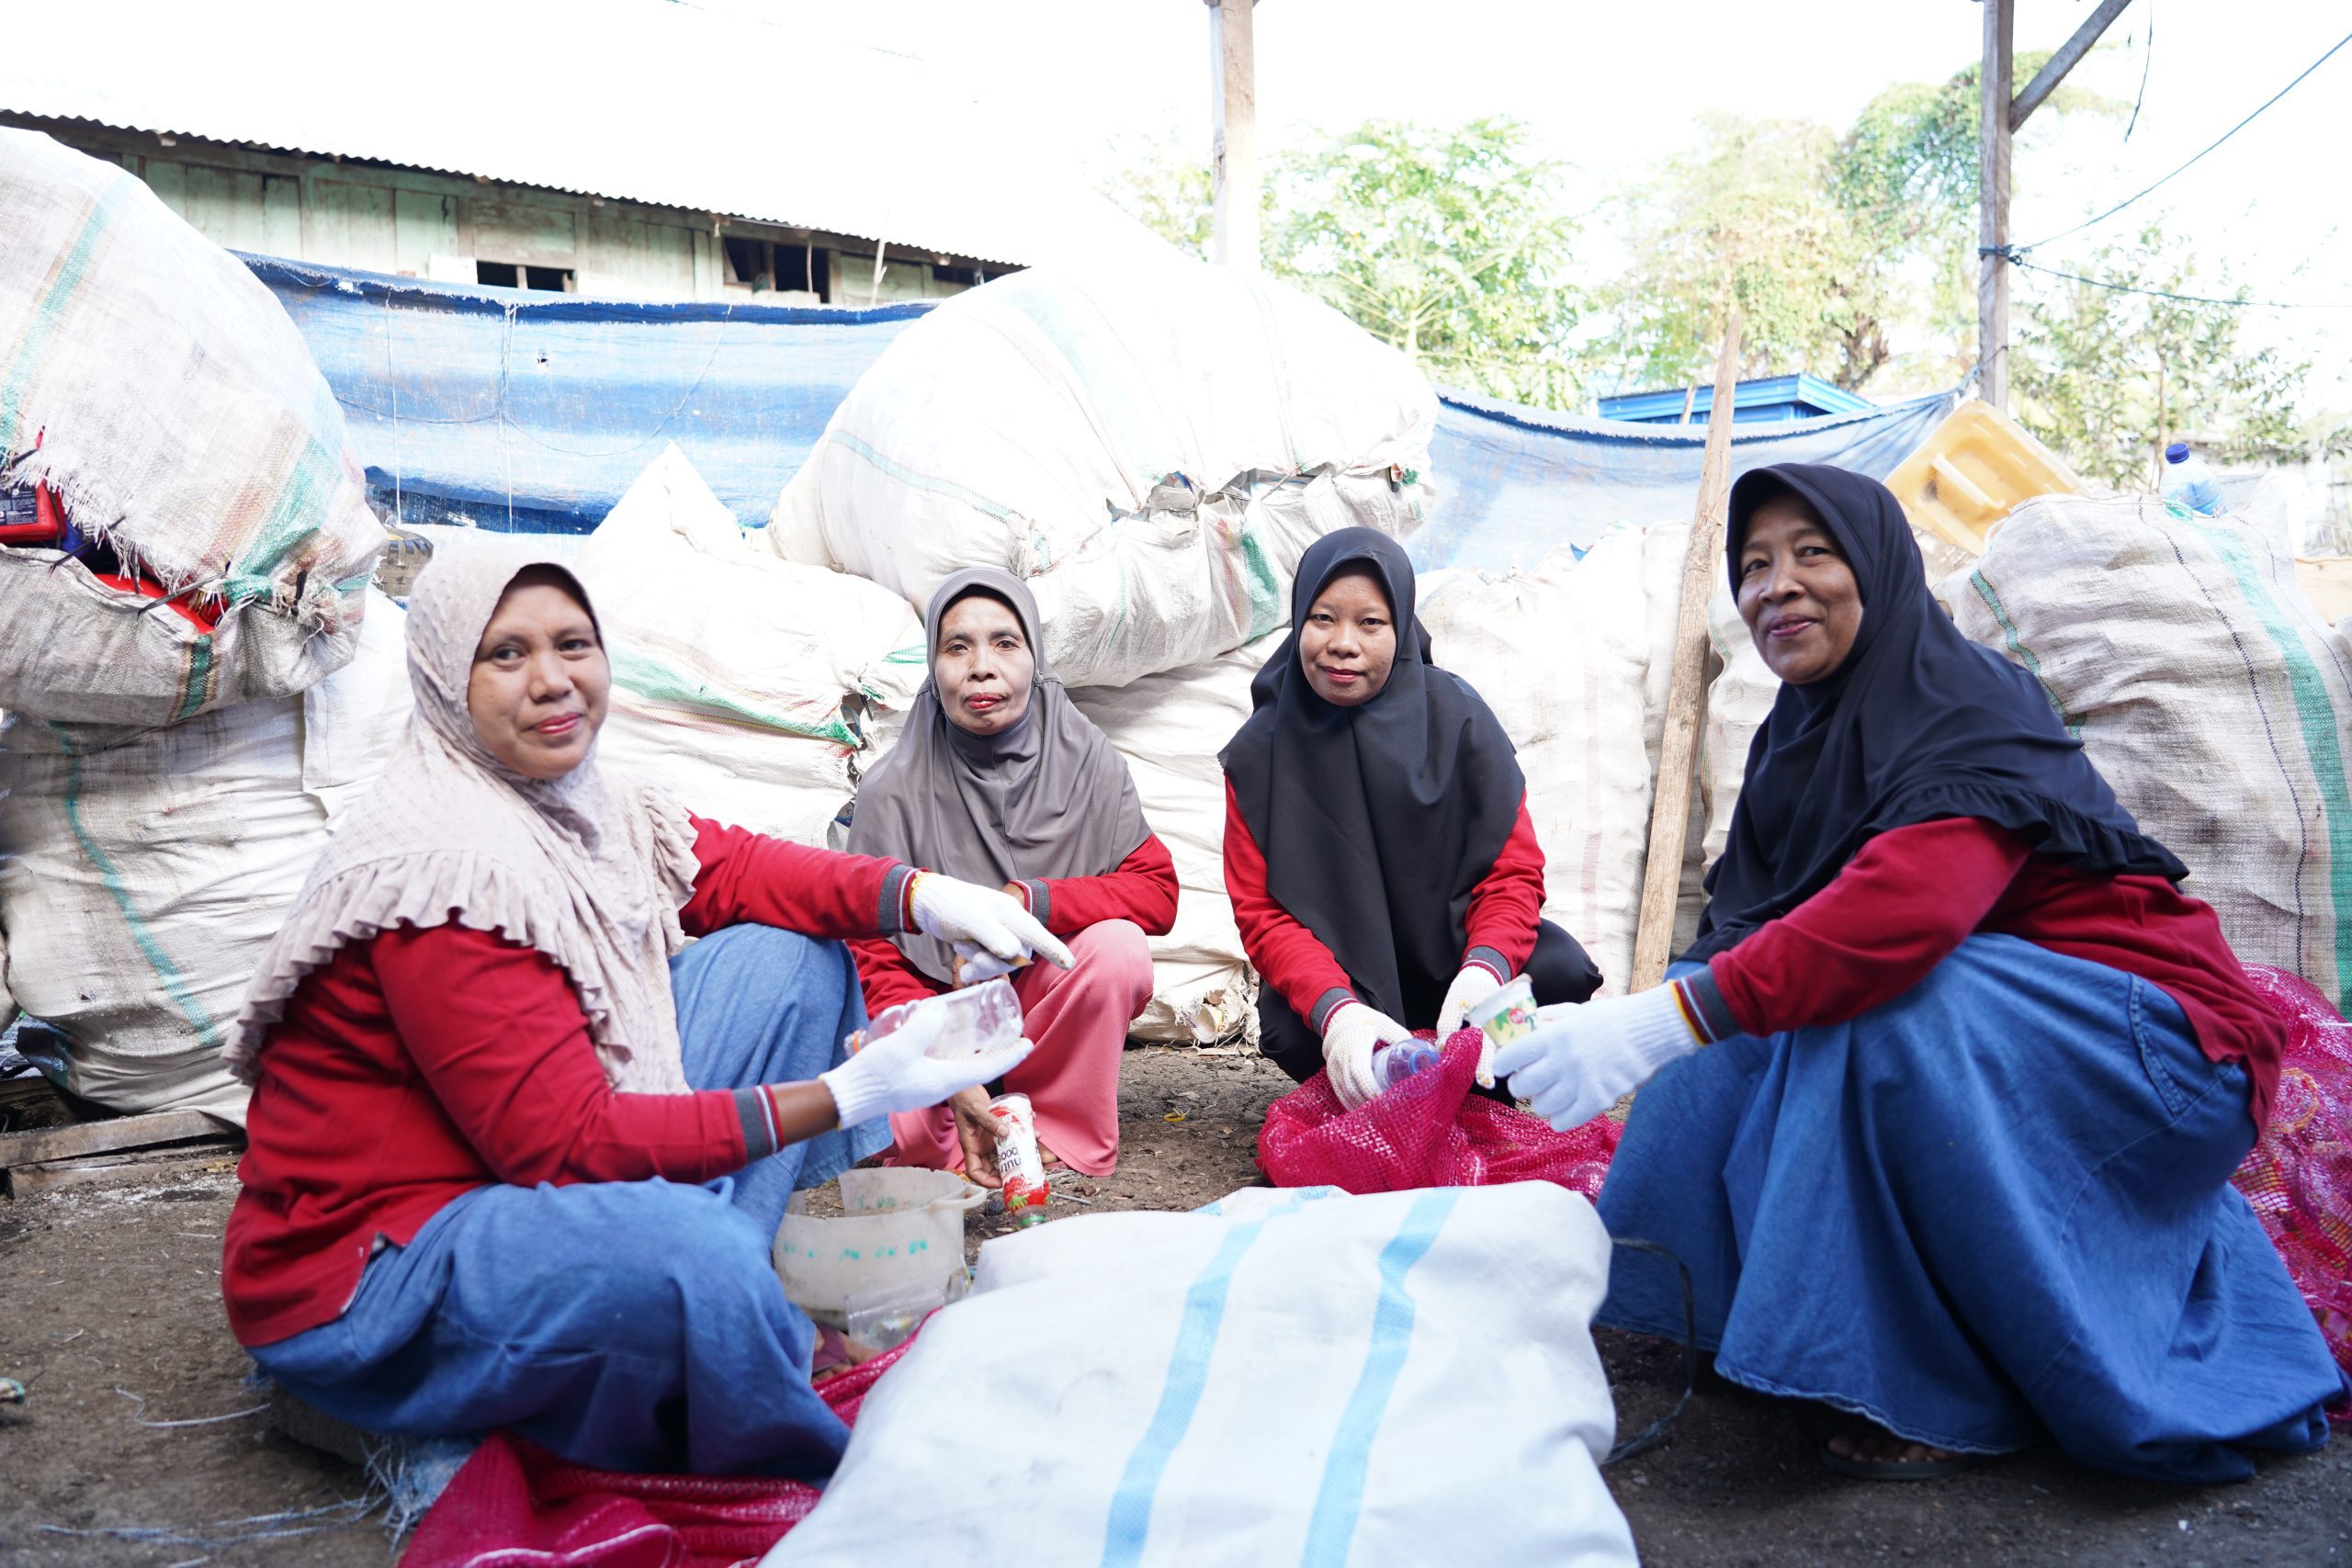 PT Sumbawa Timur Mining Waste Bank Empowers Communities